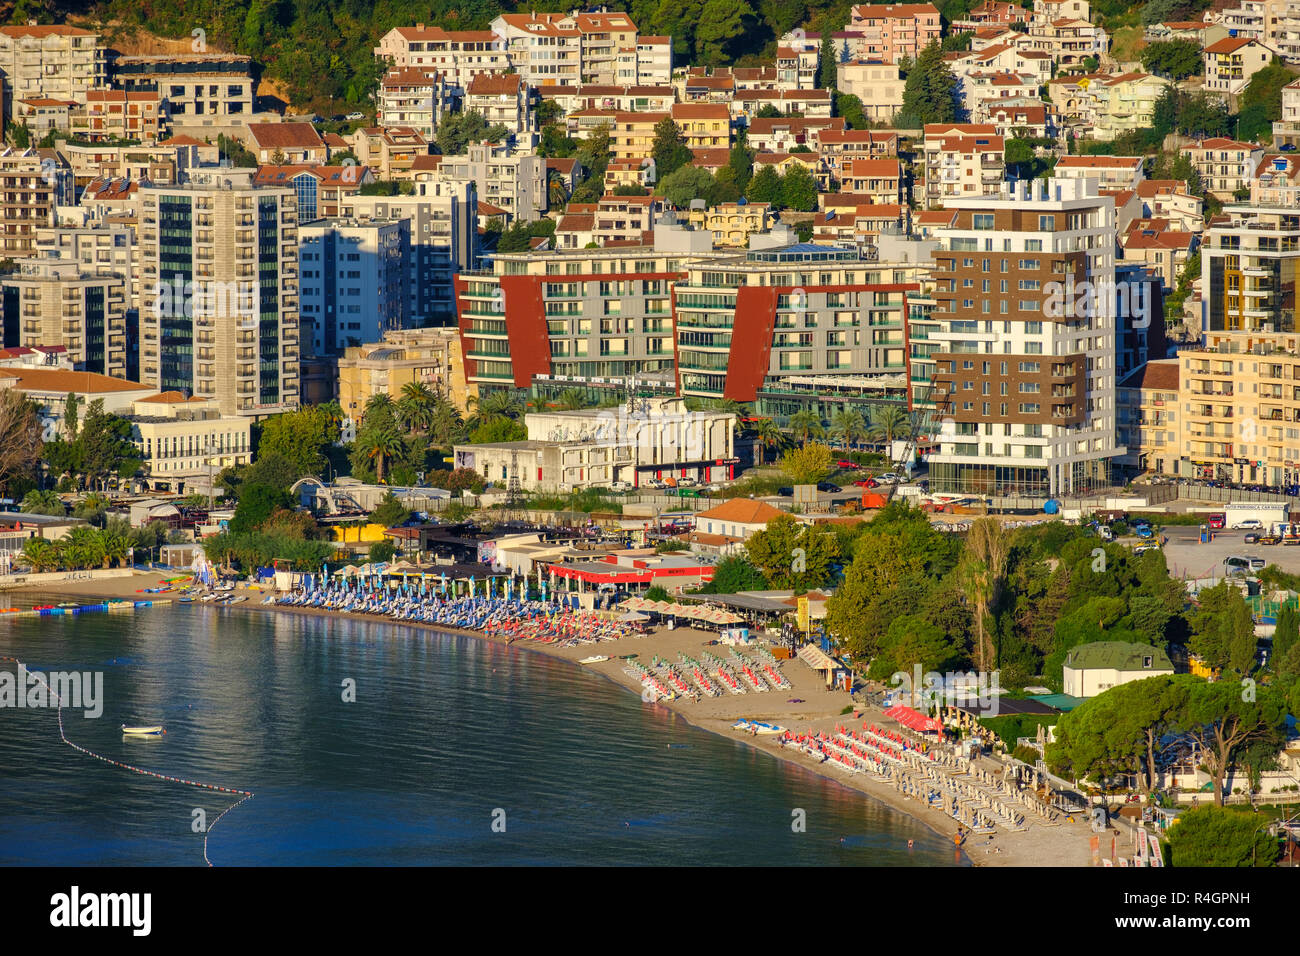 Ferienanlage Slovenska Plaza mit Strand und Hotels, Budva, Adria, Montenegro Stockfoto